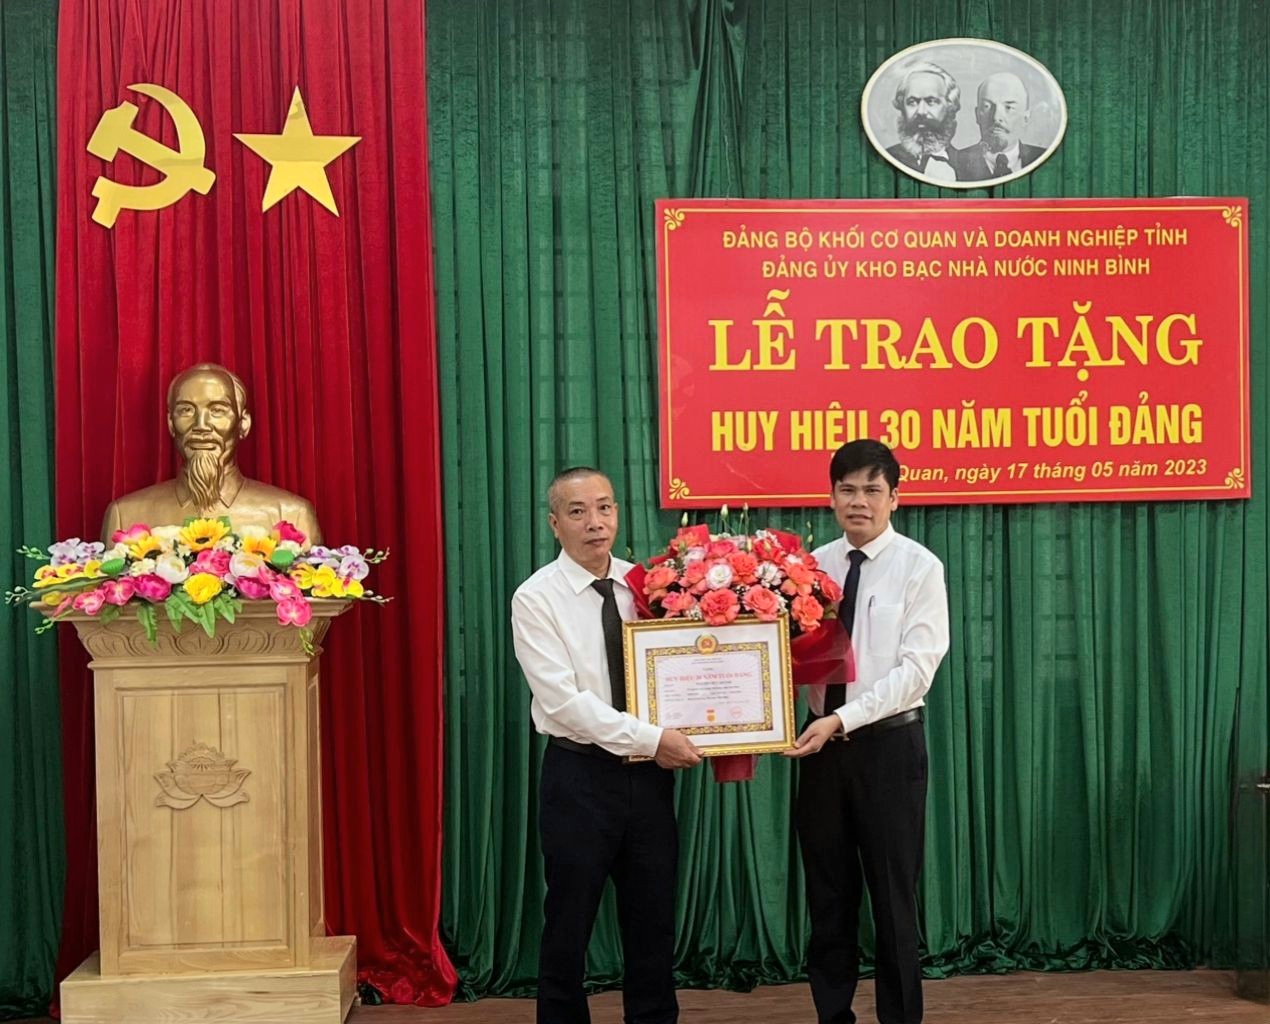 Đảng ủy Kho bạc Nhà nước Ninh Bình tổ chức Lễ trao tặng Huy hiệu 30 năm tuổi Đảng cho đảng viên